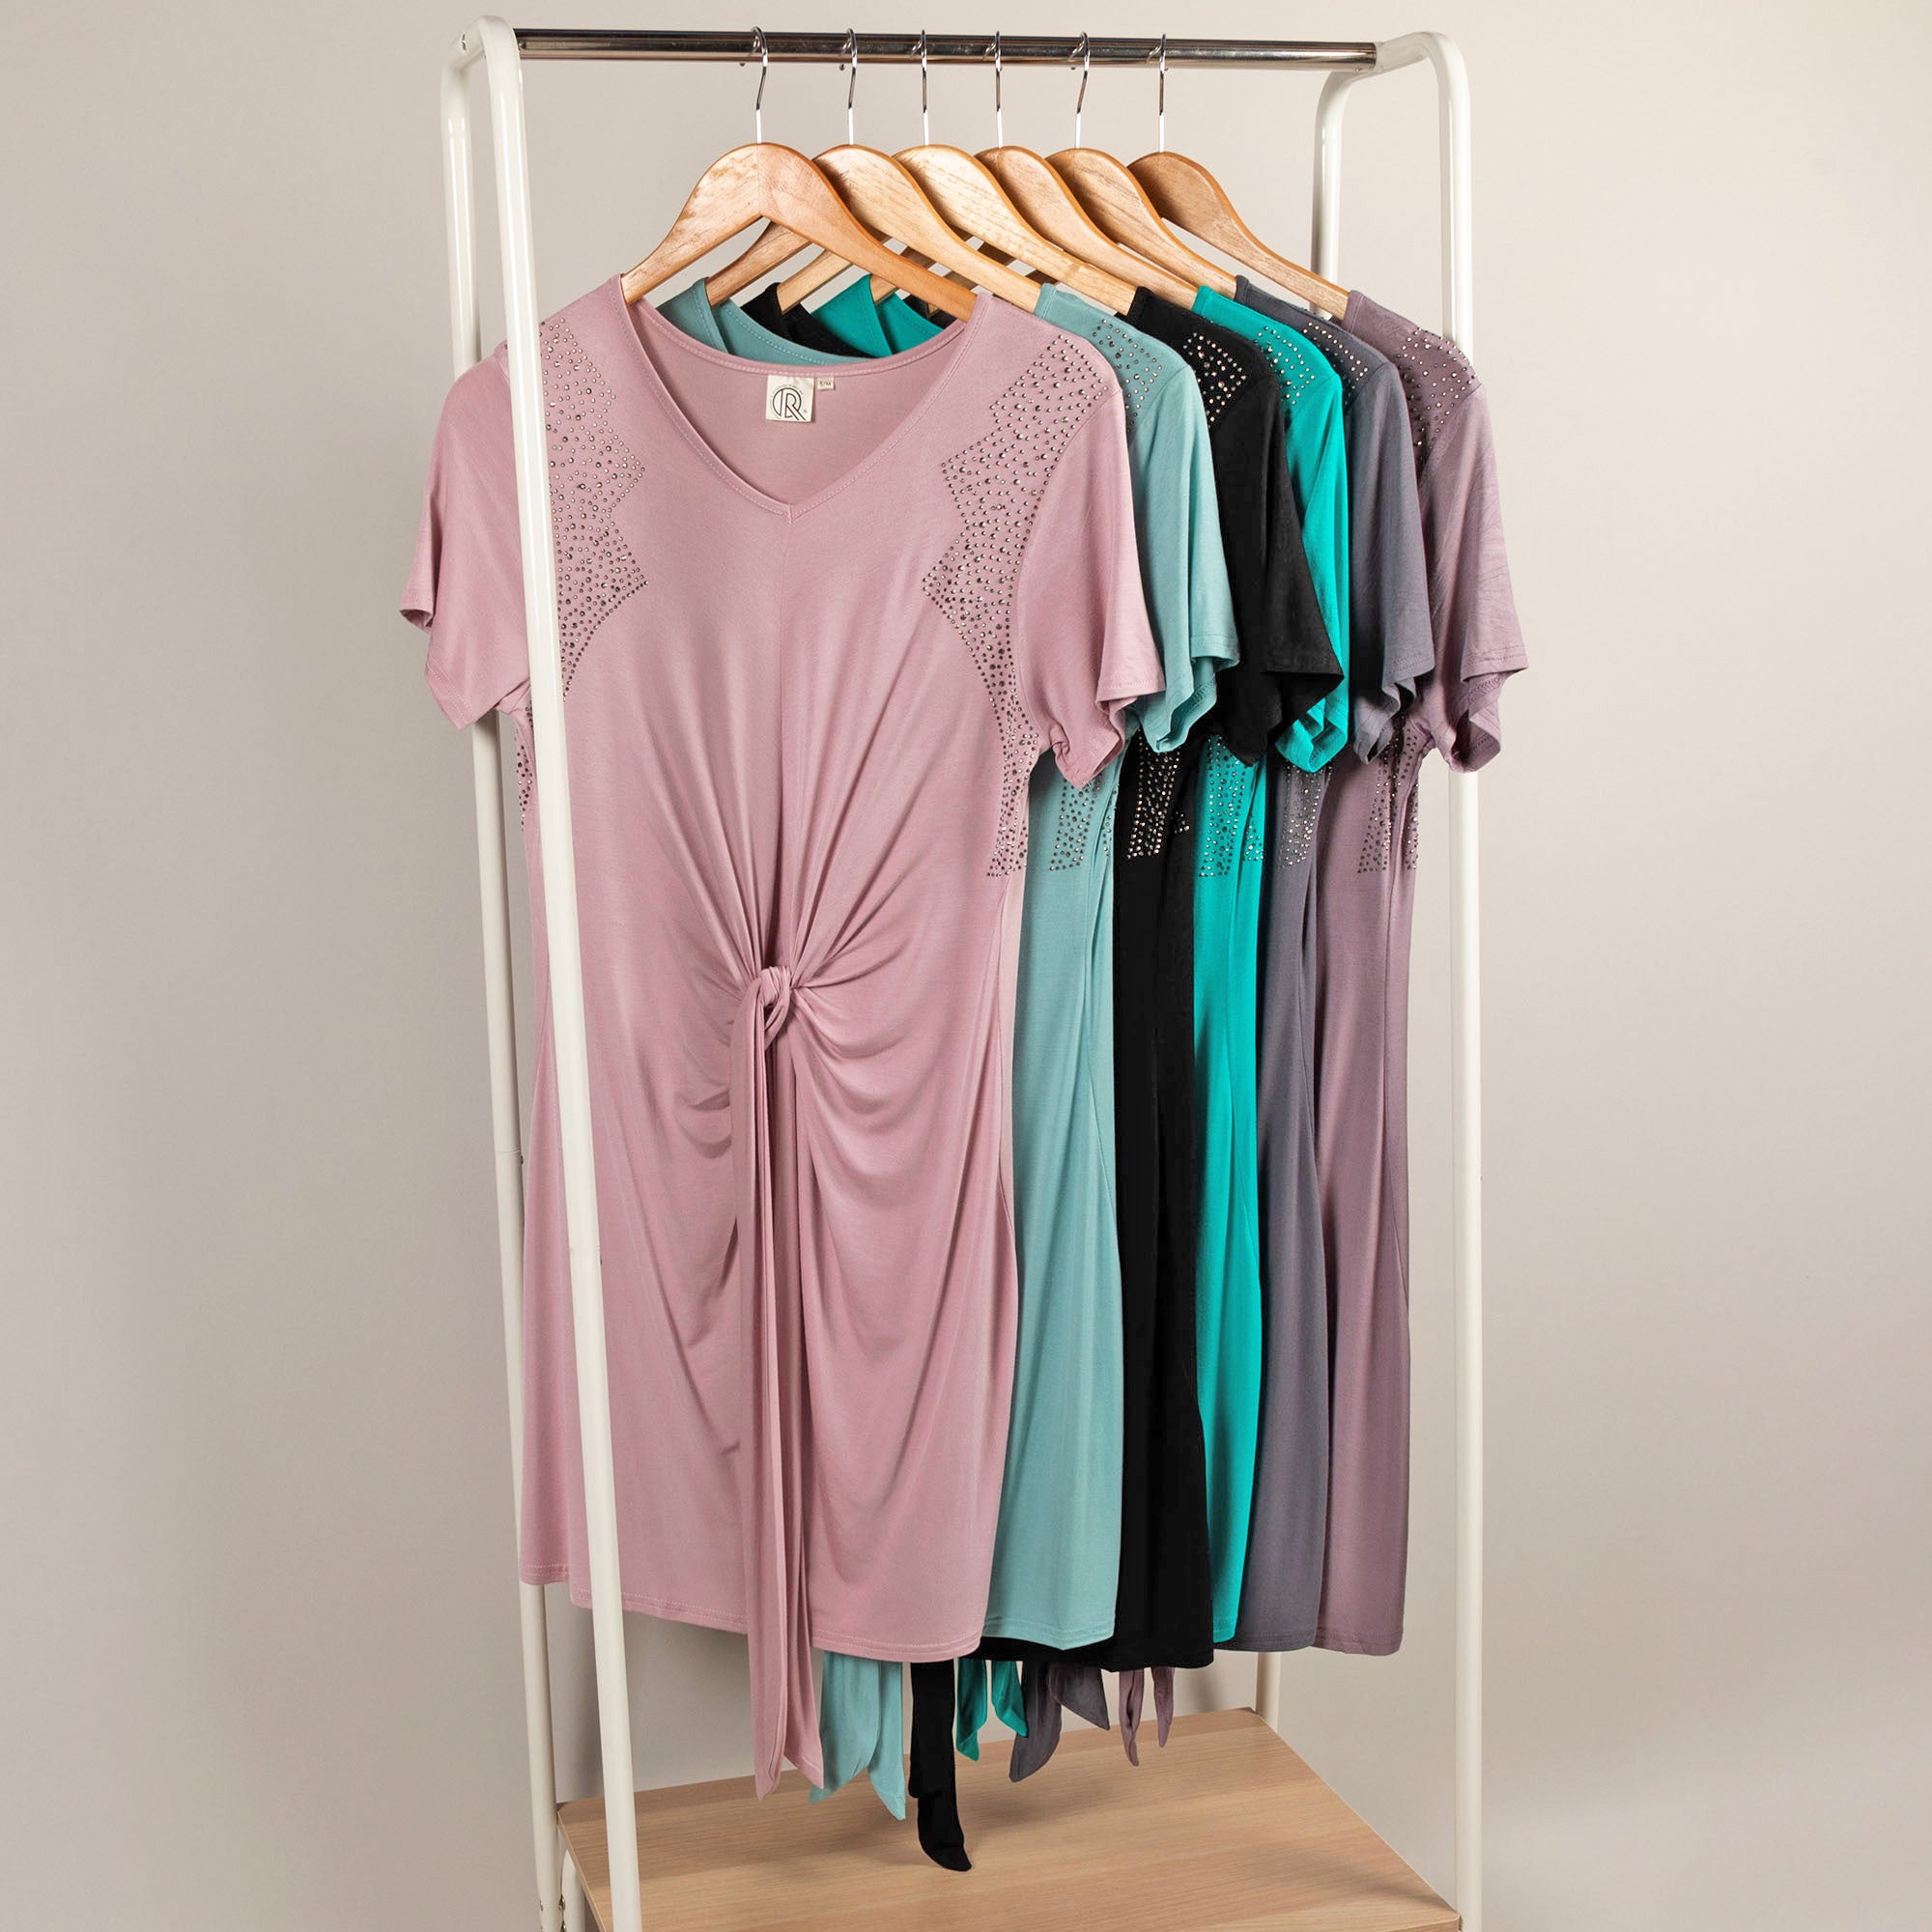 Twist Tie-Front Short Sleeve Dress With Rhinestones - Mint - L/XL